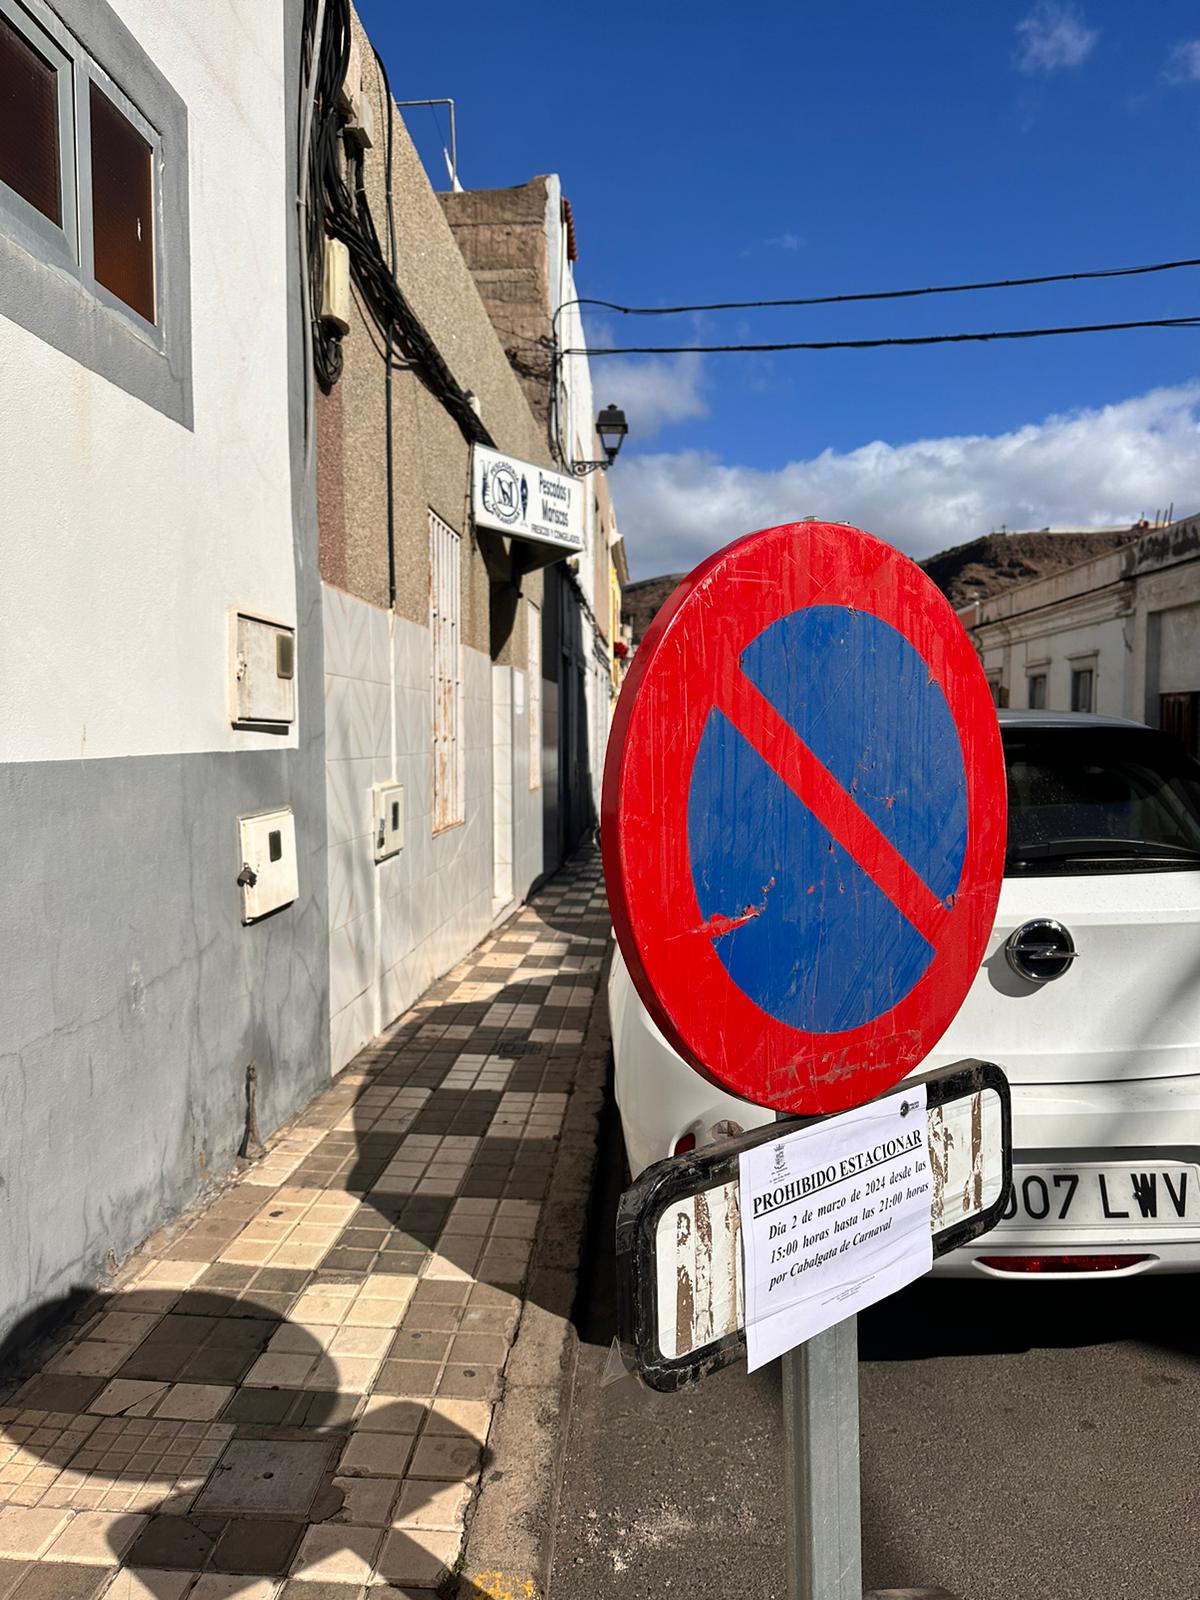 La Concejalía de Tráfico de La Aldea de San Nicolás informa de cortes de tráfico por la Cabalgata del Carnaval